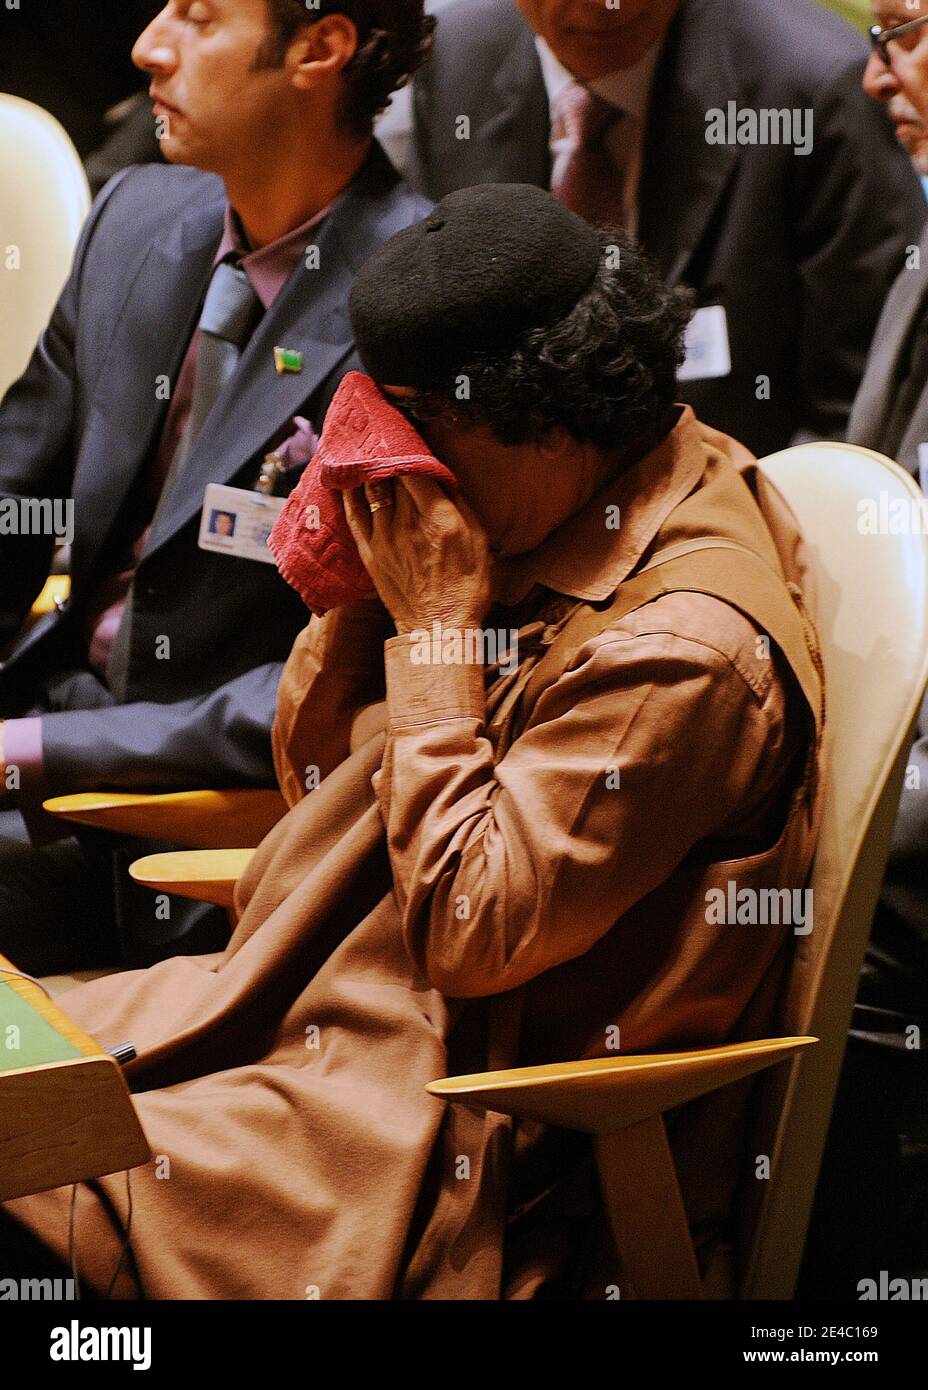 Le leader lybien, Moammar Gadhafi, assiste à la 64e Assemblée générale des Nations Unies à New York, NY, USA, le 23 septembre 2009. Photo par Olivier Douliery/ABACAPRESS.COM (en photo : Mouammar Kadhafi ) Banque D'Images